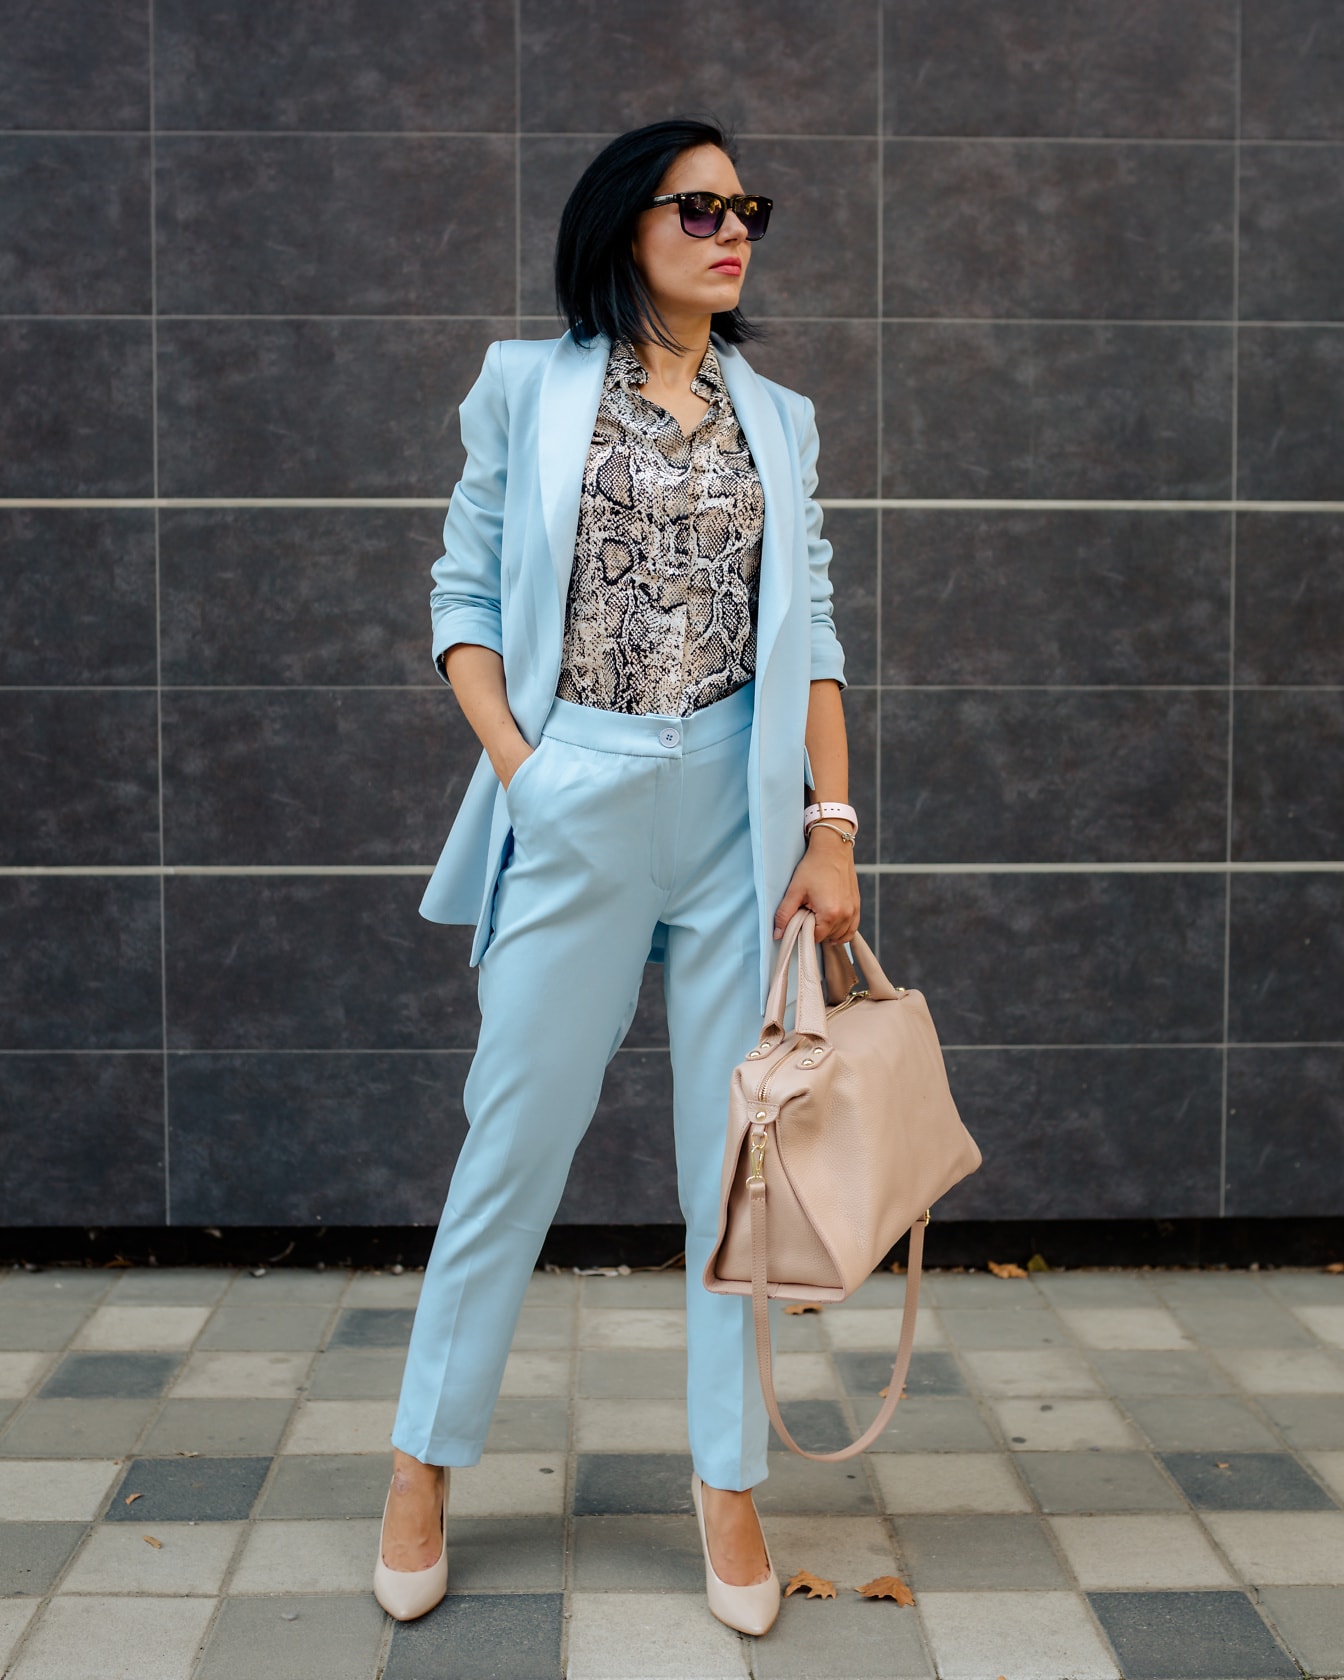 Retrato de uma empresária posando em um terno azul moderno e camisa padrão cobra